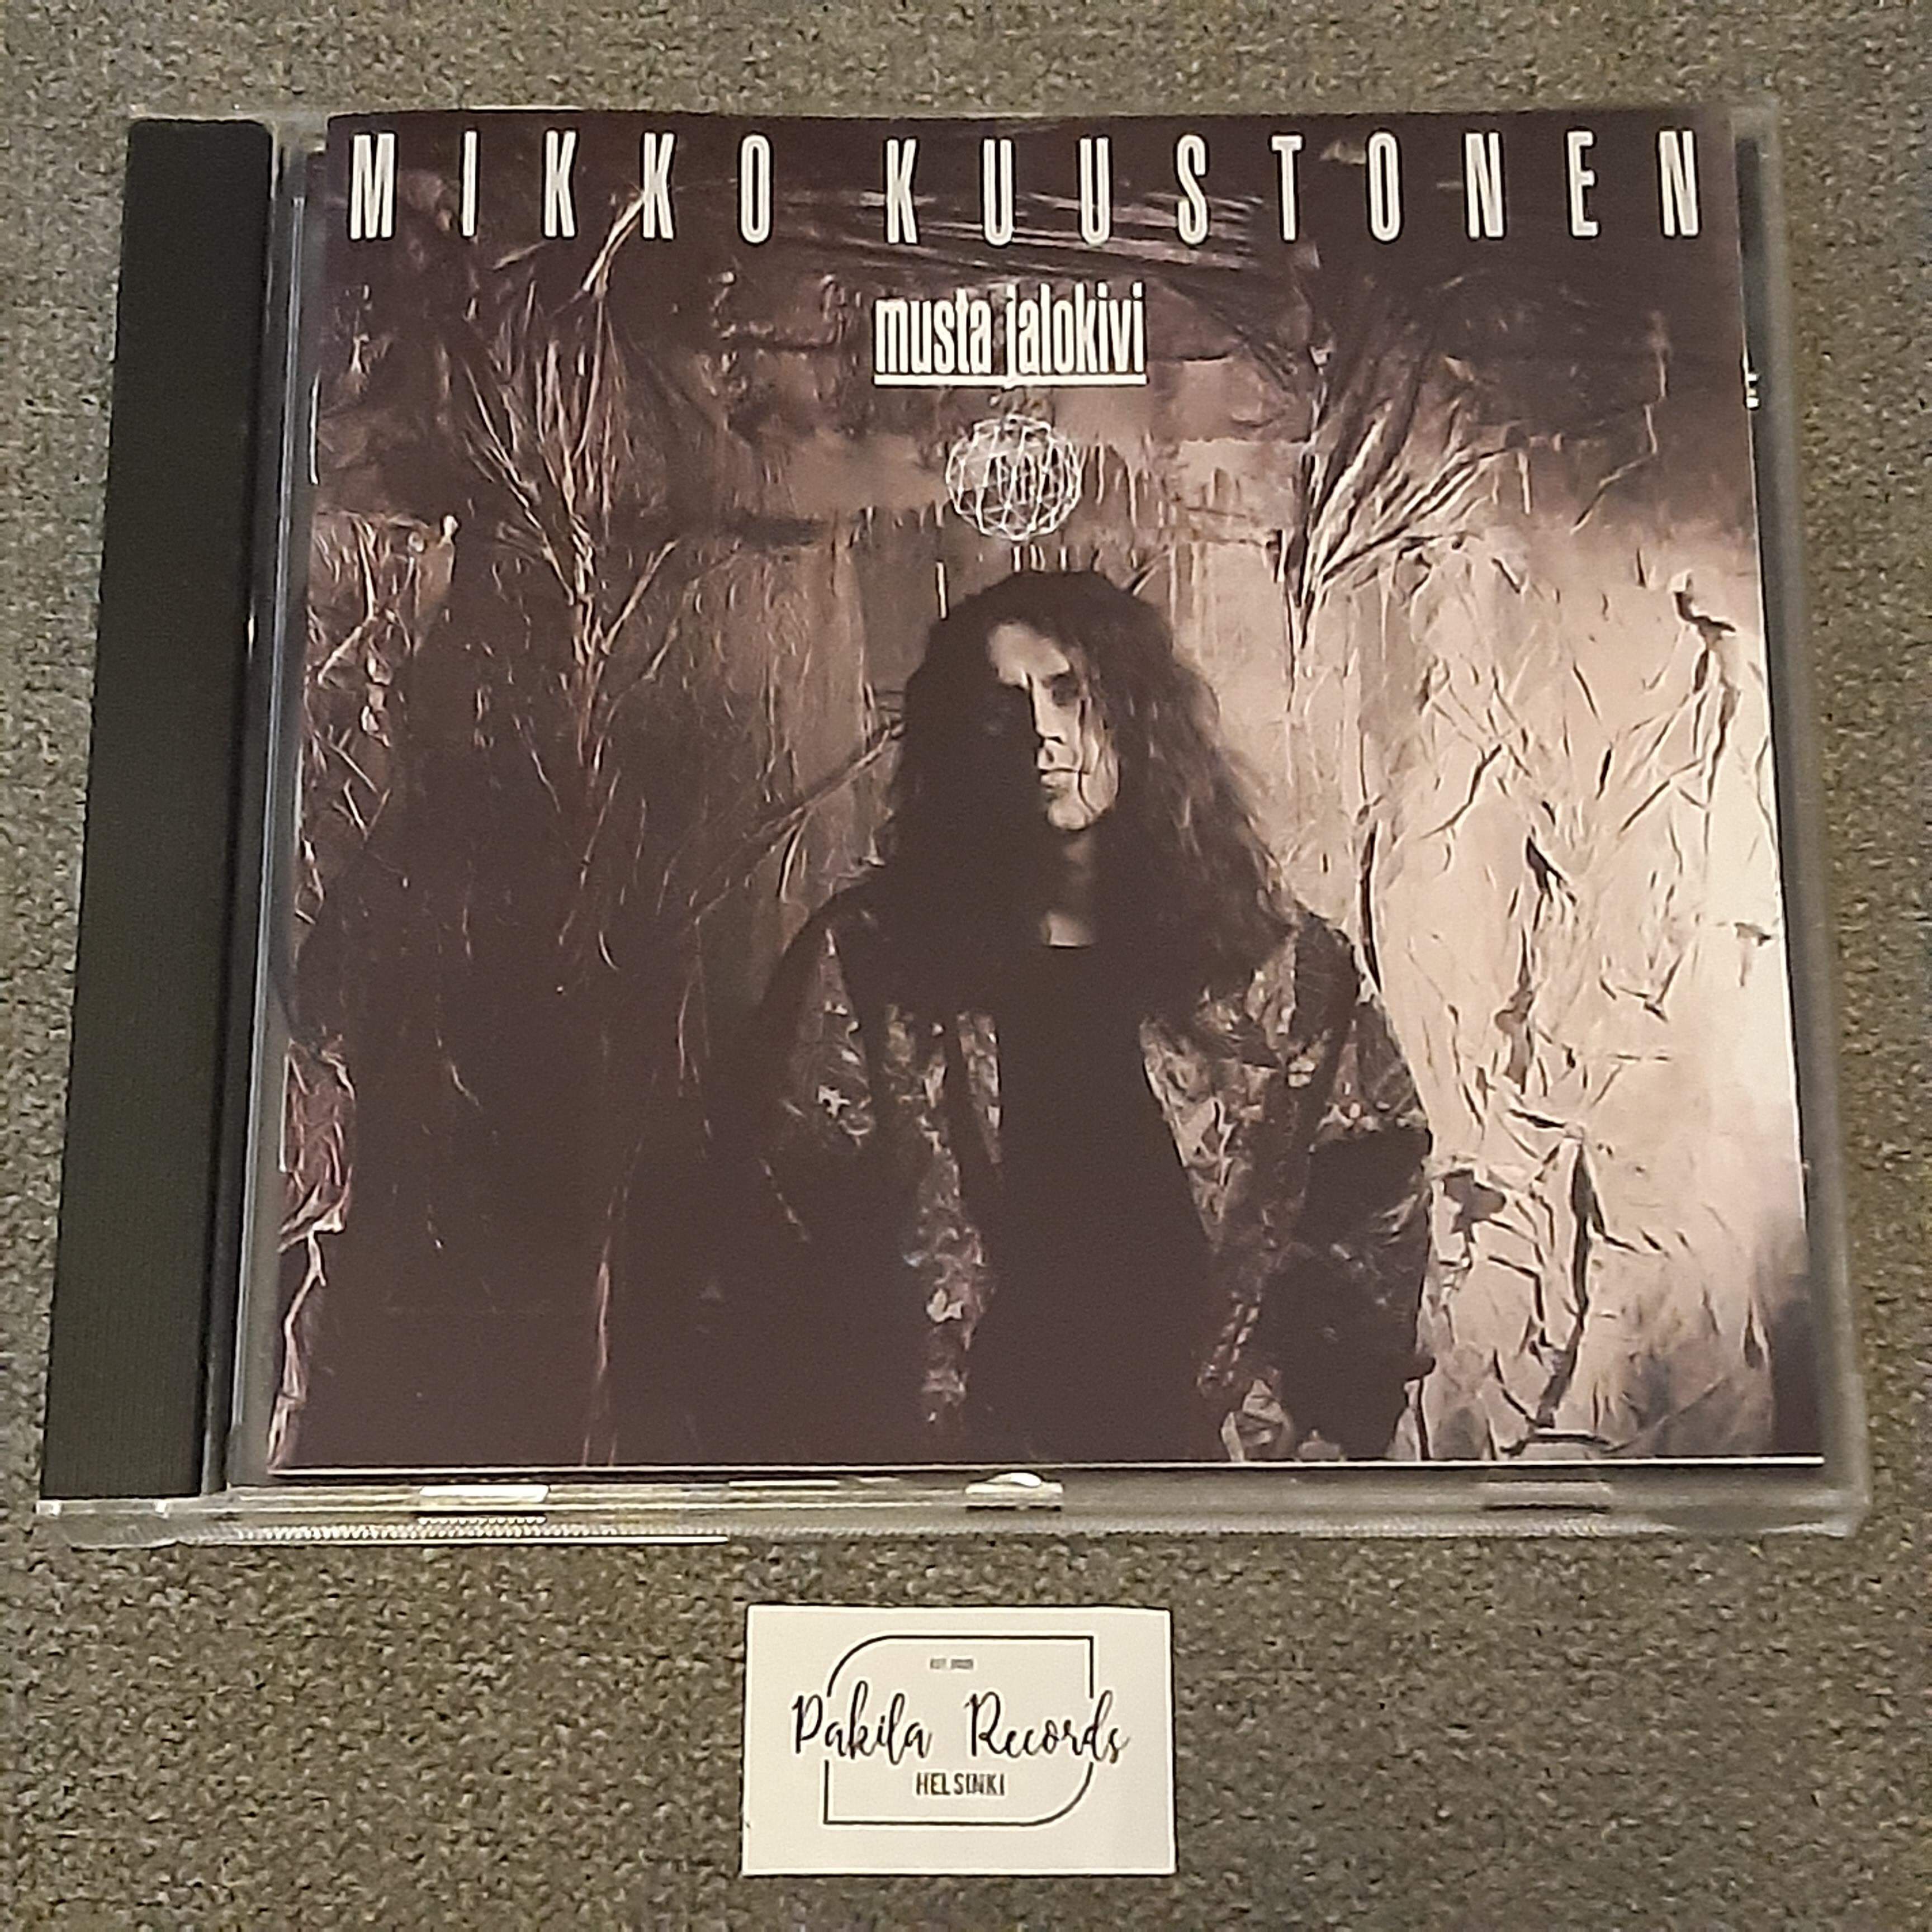 Mikko Kuustonen - Musta jalokivi - CD (käytetty)